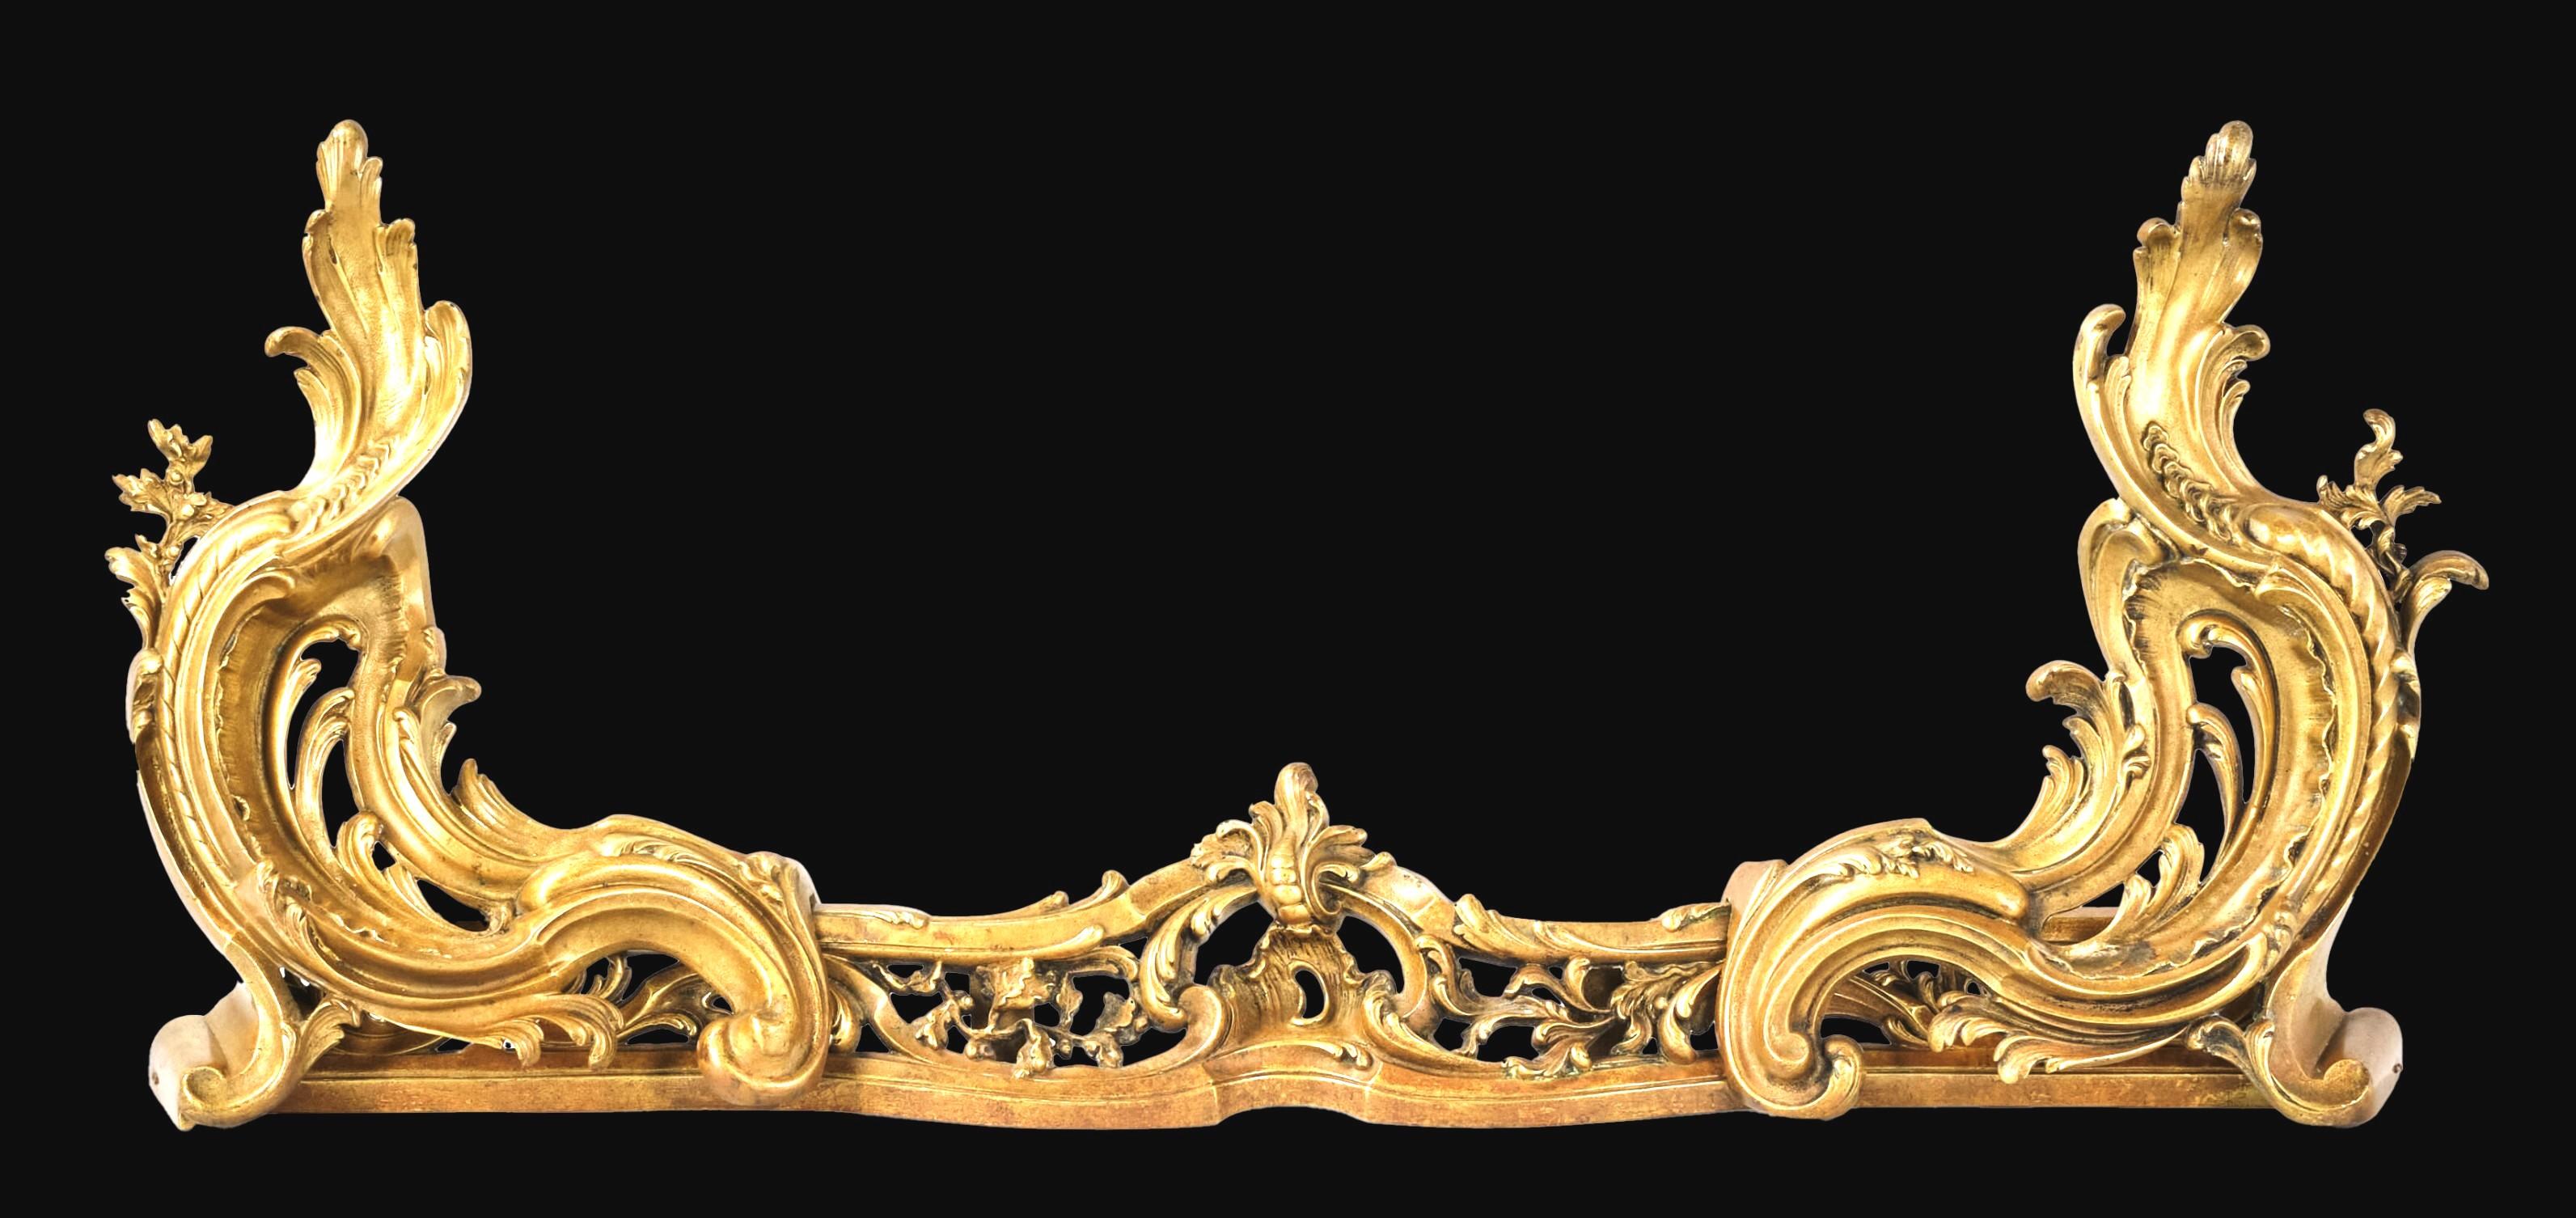 Ein fein gegossener und reich vergoldeter Feuerschutz aus vergoldeter Bronze im Stil der Belle Epoque von Louis XV zusammen mit einem passenden Paar robuster vergoldeter Bronze-Chenets. 
Sowohl die durchbrochenen als auch die mit Blättern versehenen